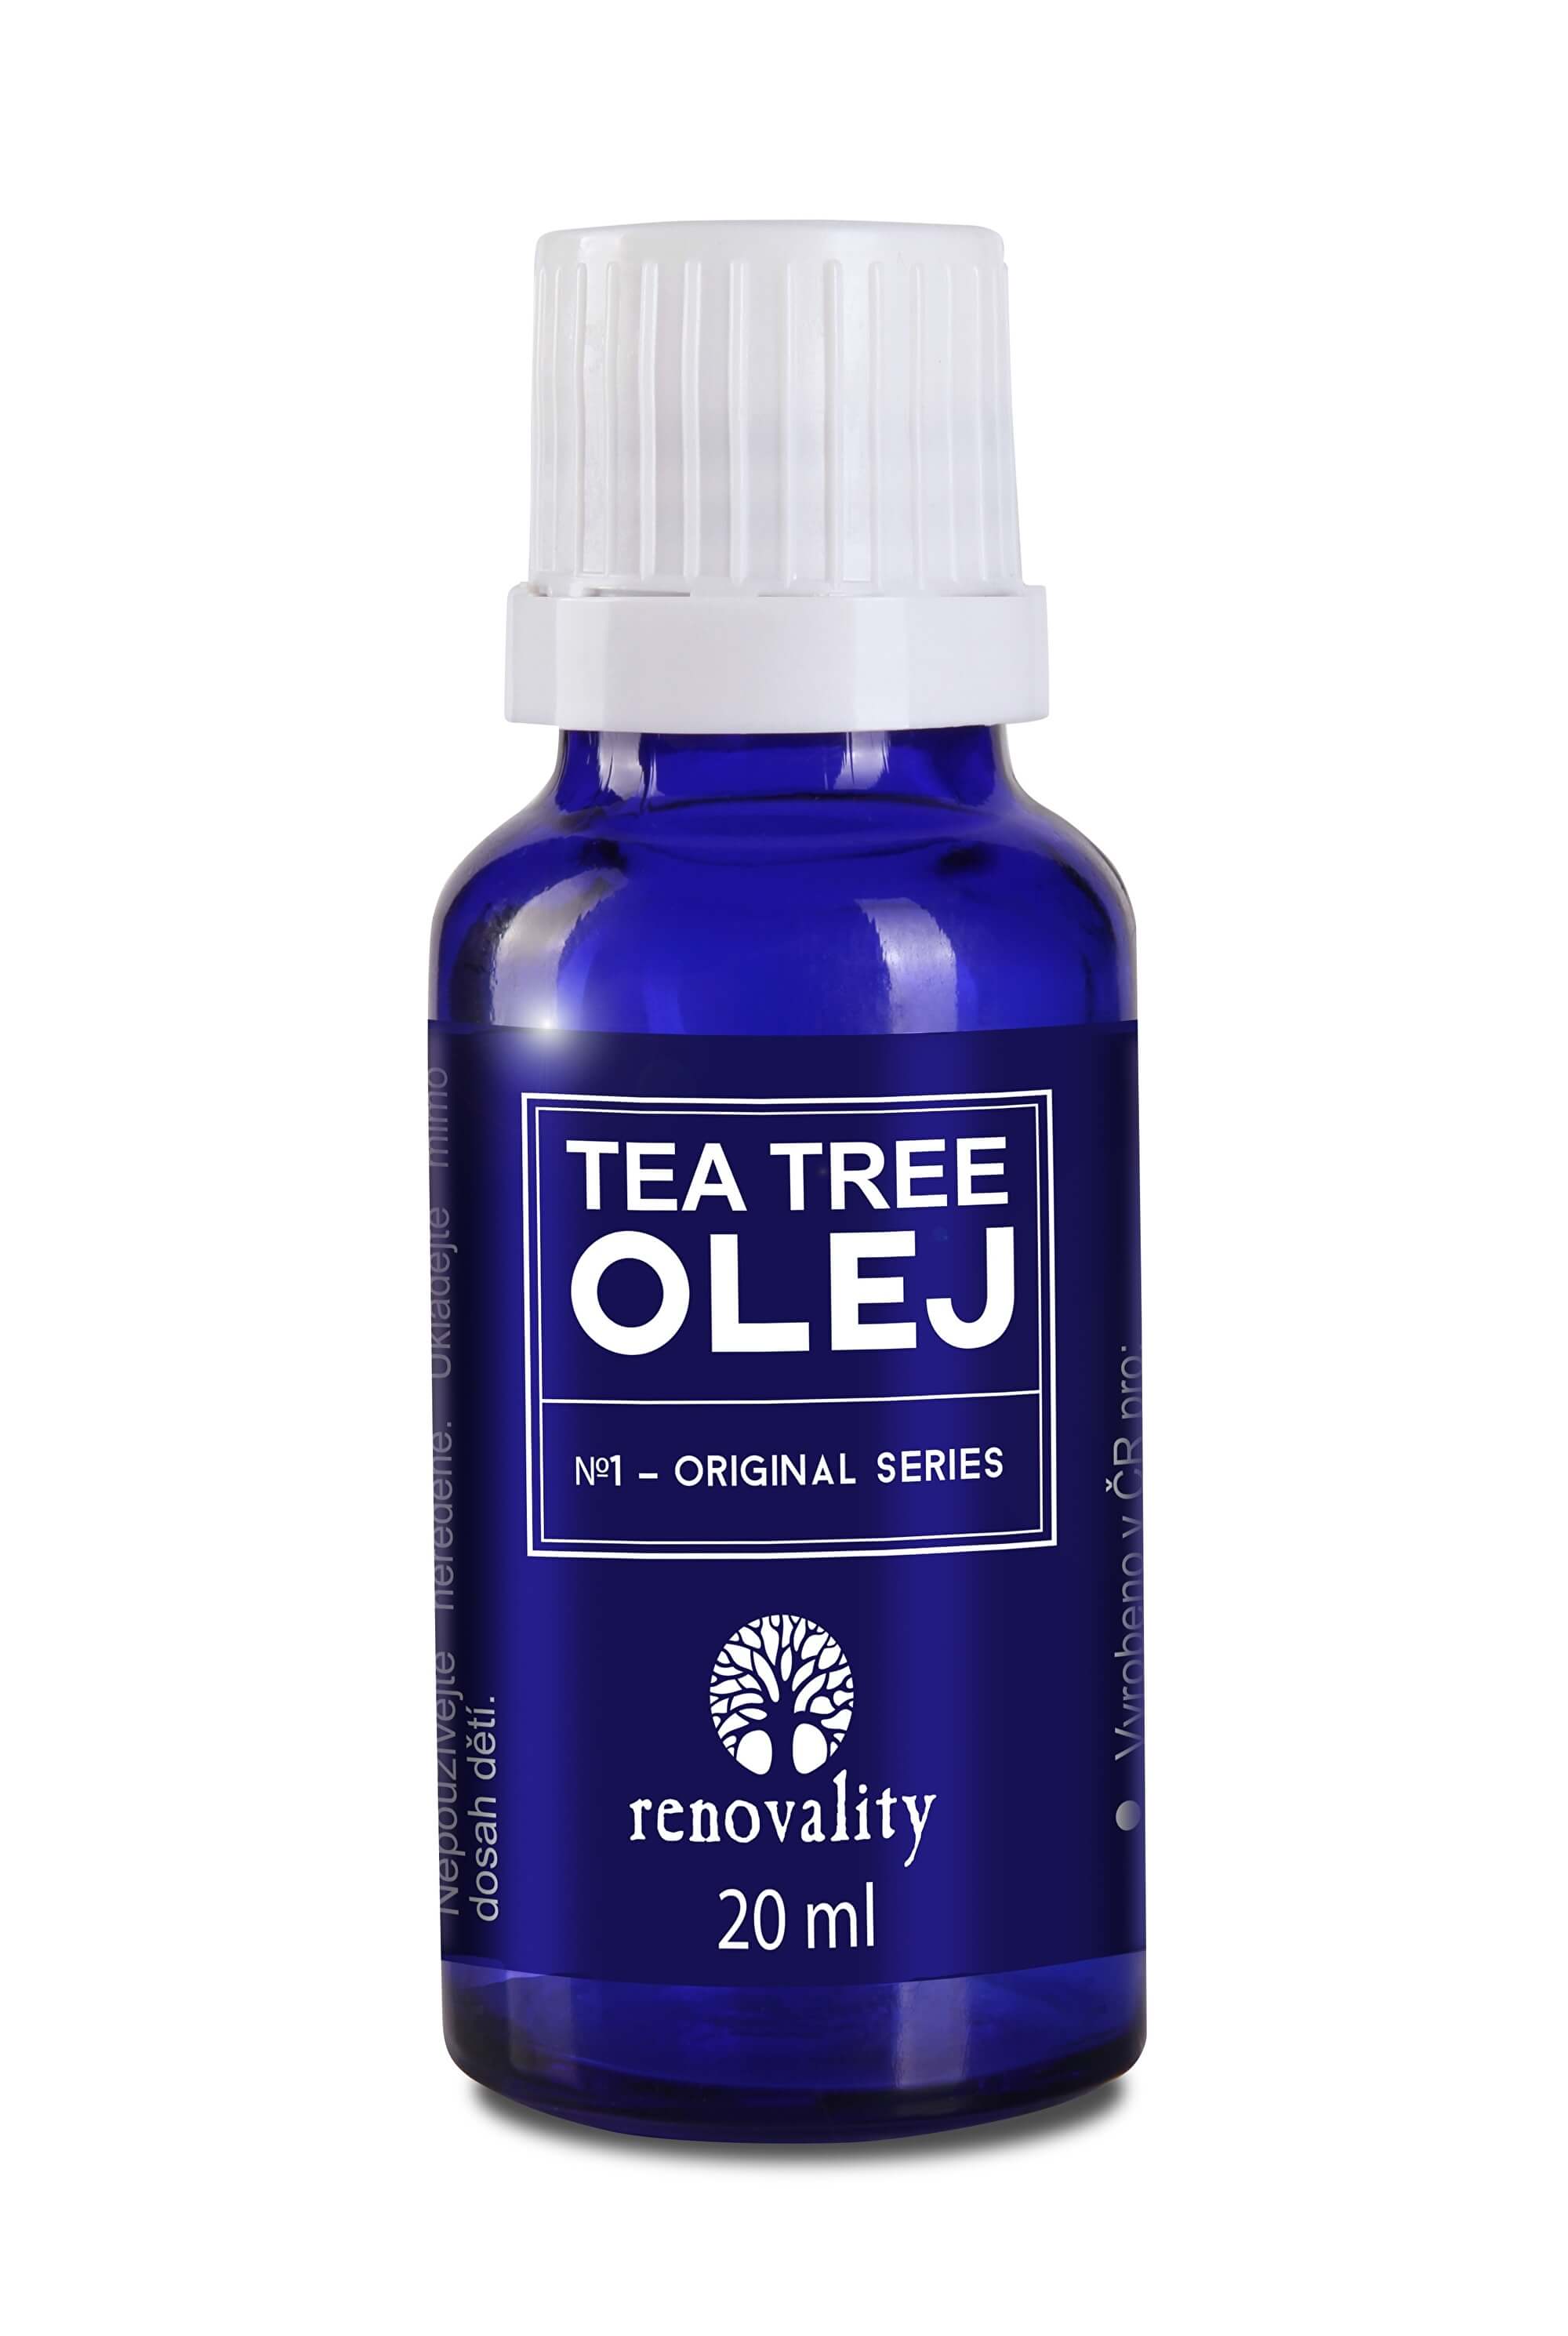 Zobrazit detail výrobku Renovality Tea Tree olej s kapátkem 20ml + 2 měsíce na vrácení zboží